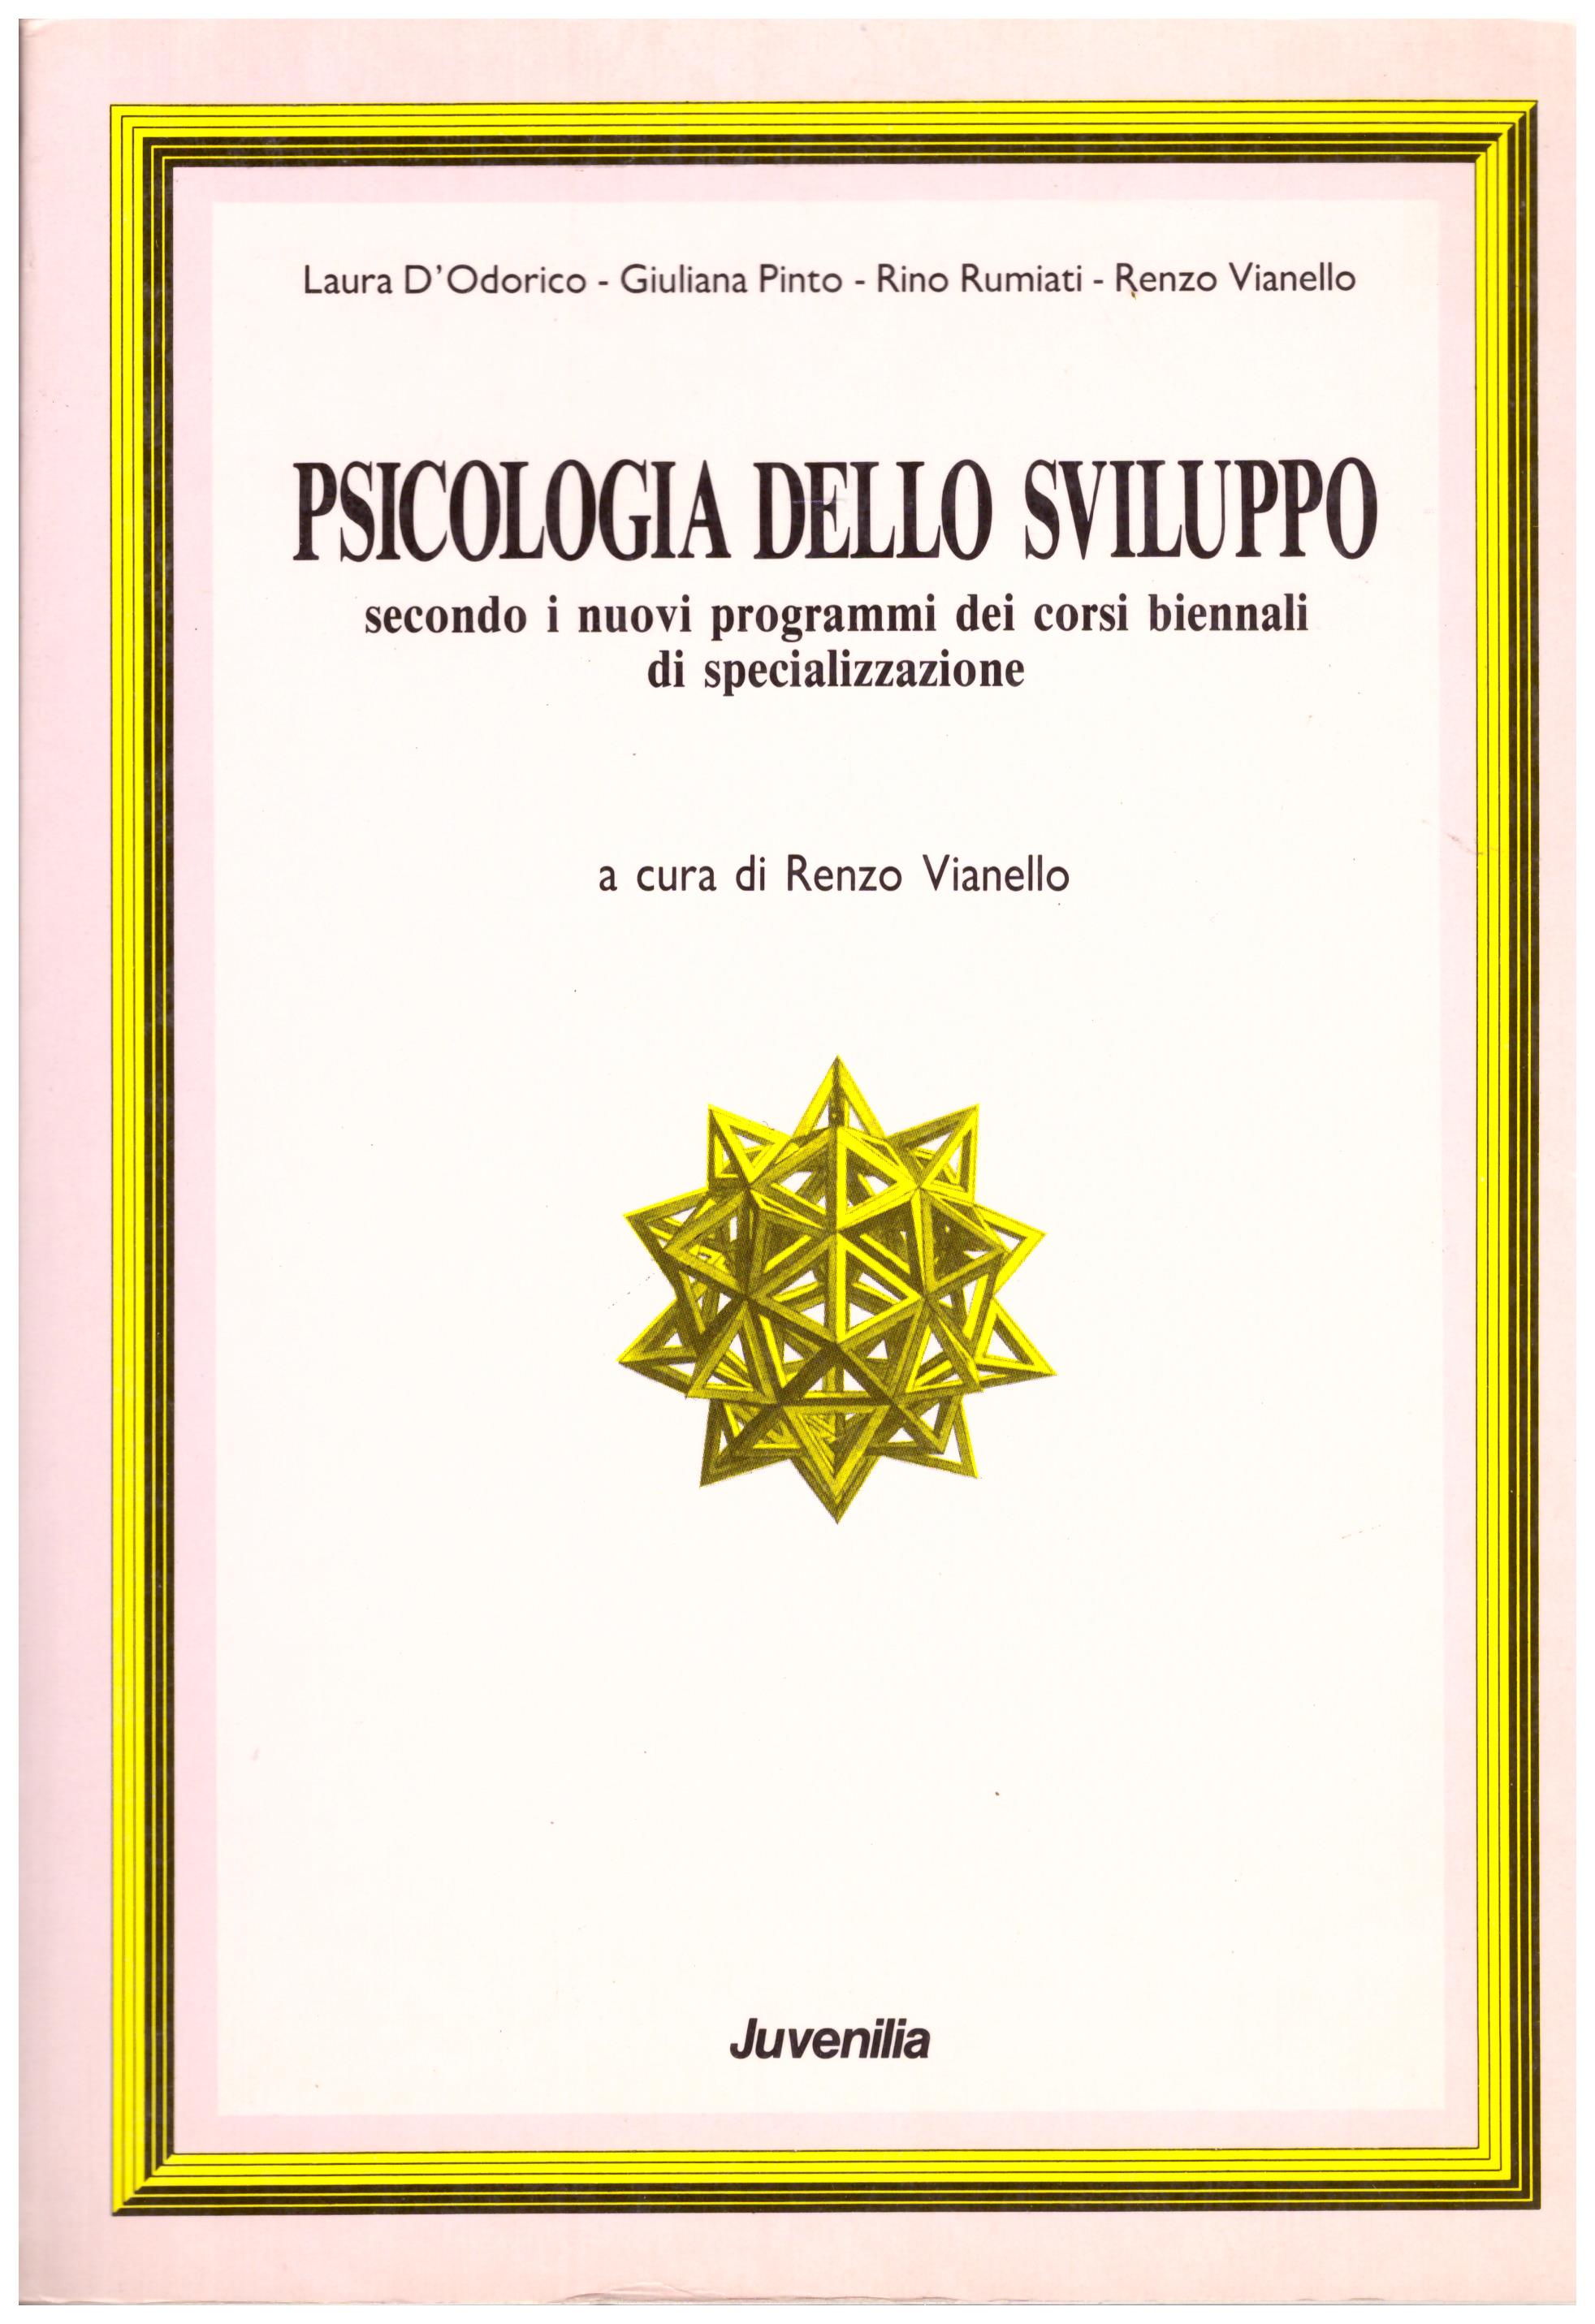 Titolo: Psicologia dello sviluppo, secondo i nuovi programmi dei corsi biennali di specializzazione Autore : AA.VV. A cura di Renzo Vianello Editore: Juvenilia, 1991